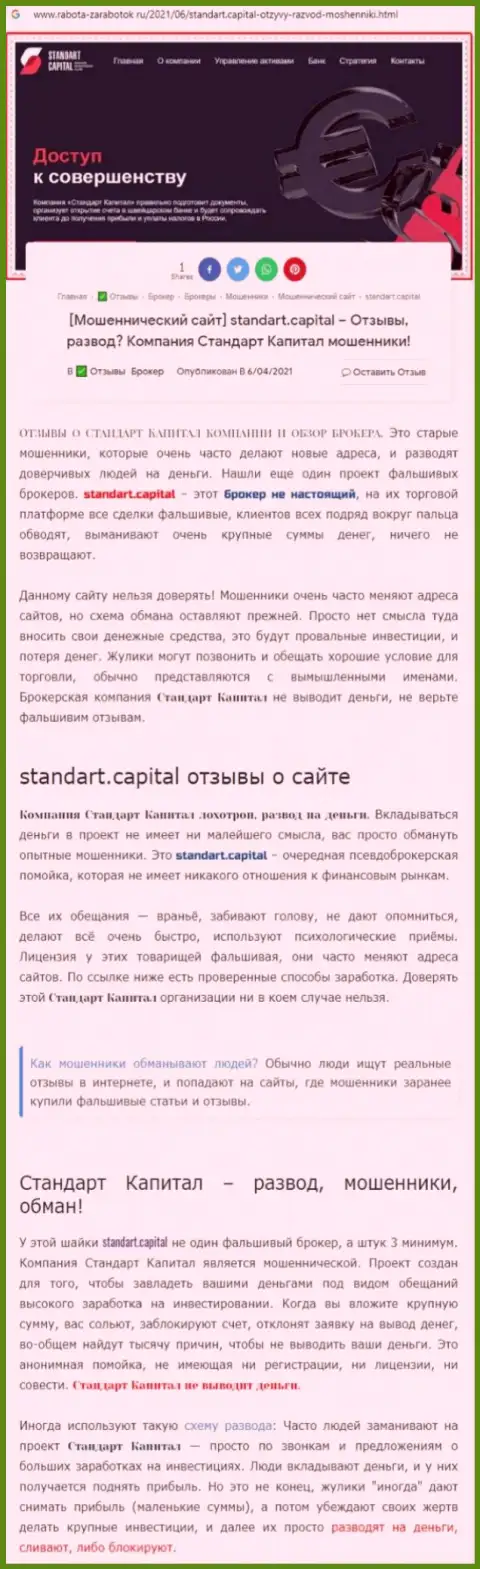 Standart Capital МОШЕННИКИ !!! Работают в своих интересах (обзор противозаконных действий)